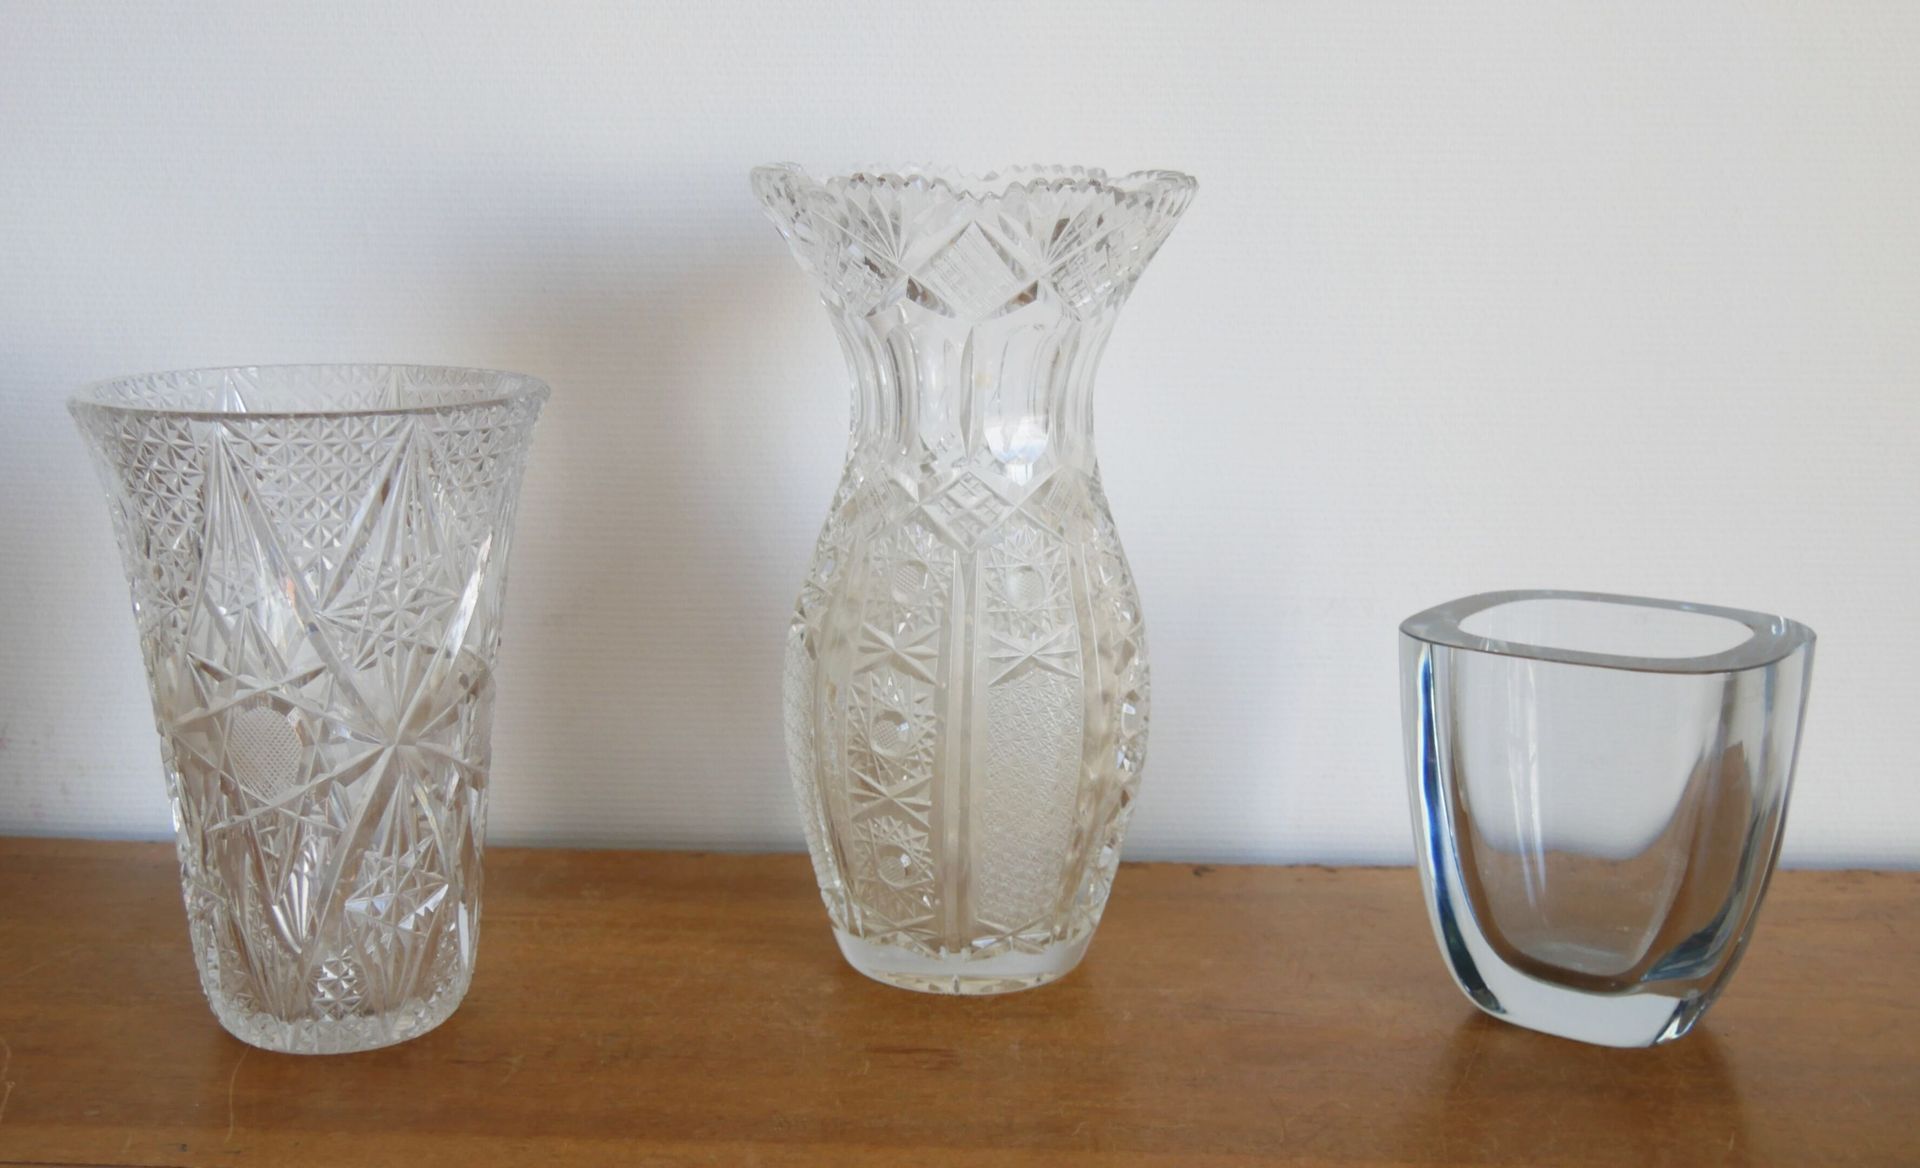 Null 一套3个花瓶，其中两个是切割水晶，分别是圆锥形、柱状和现代形状。

高度：27/20.5和13厘米

(小碎片和事故)



我们加入了4个玻璃溶胶。&hellip;